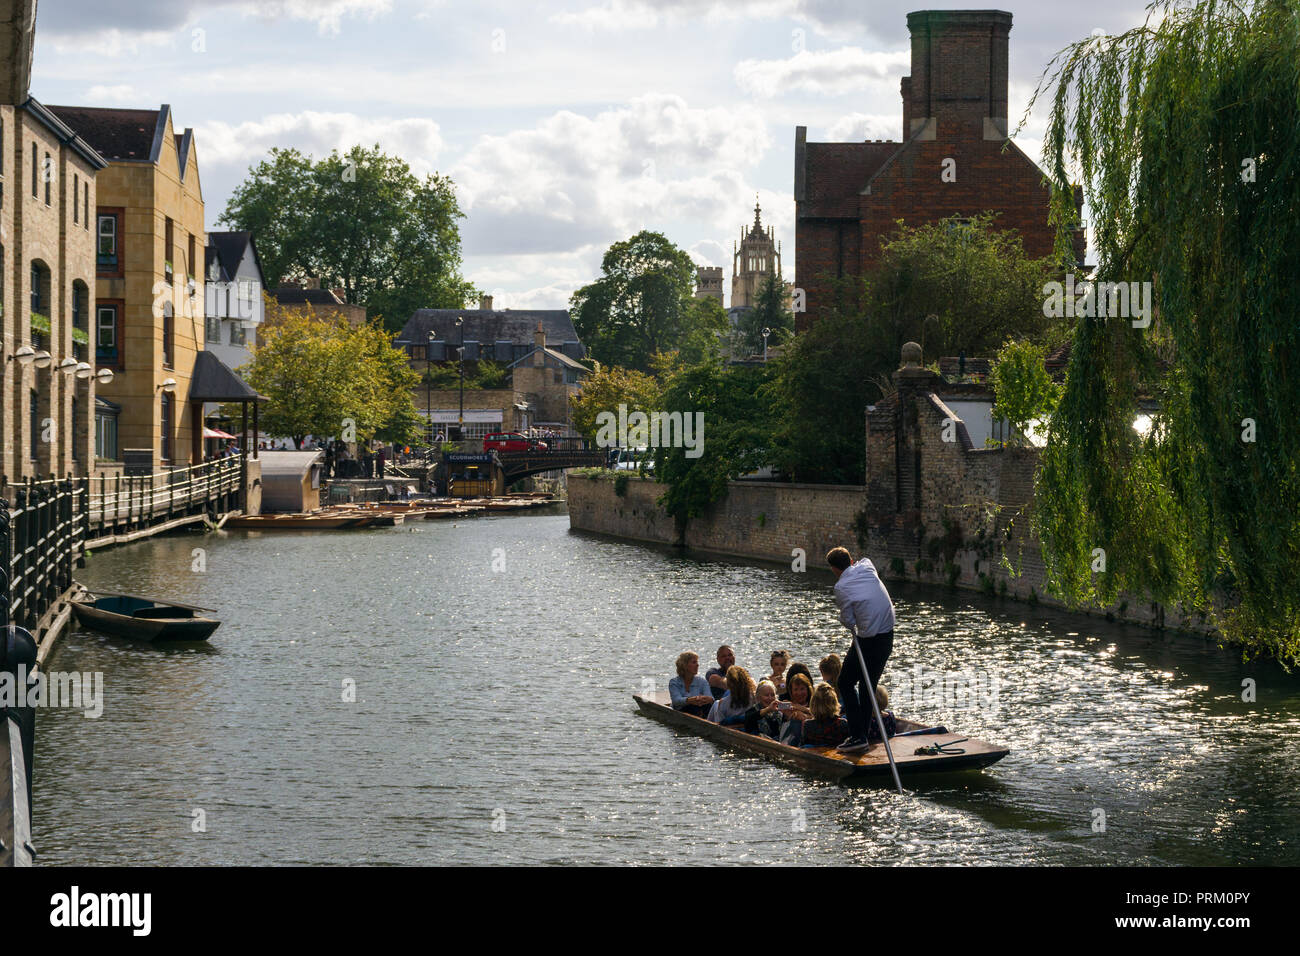 Ein punt Boot mit mehreren Personen an Bord auf dem Fluss Cam Position zu Magdalena Brücke an einem sonnigen Nachmittag, Cambridge, Großbritannien Stockfoto